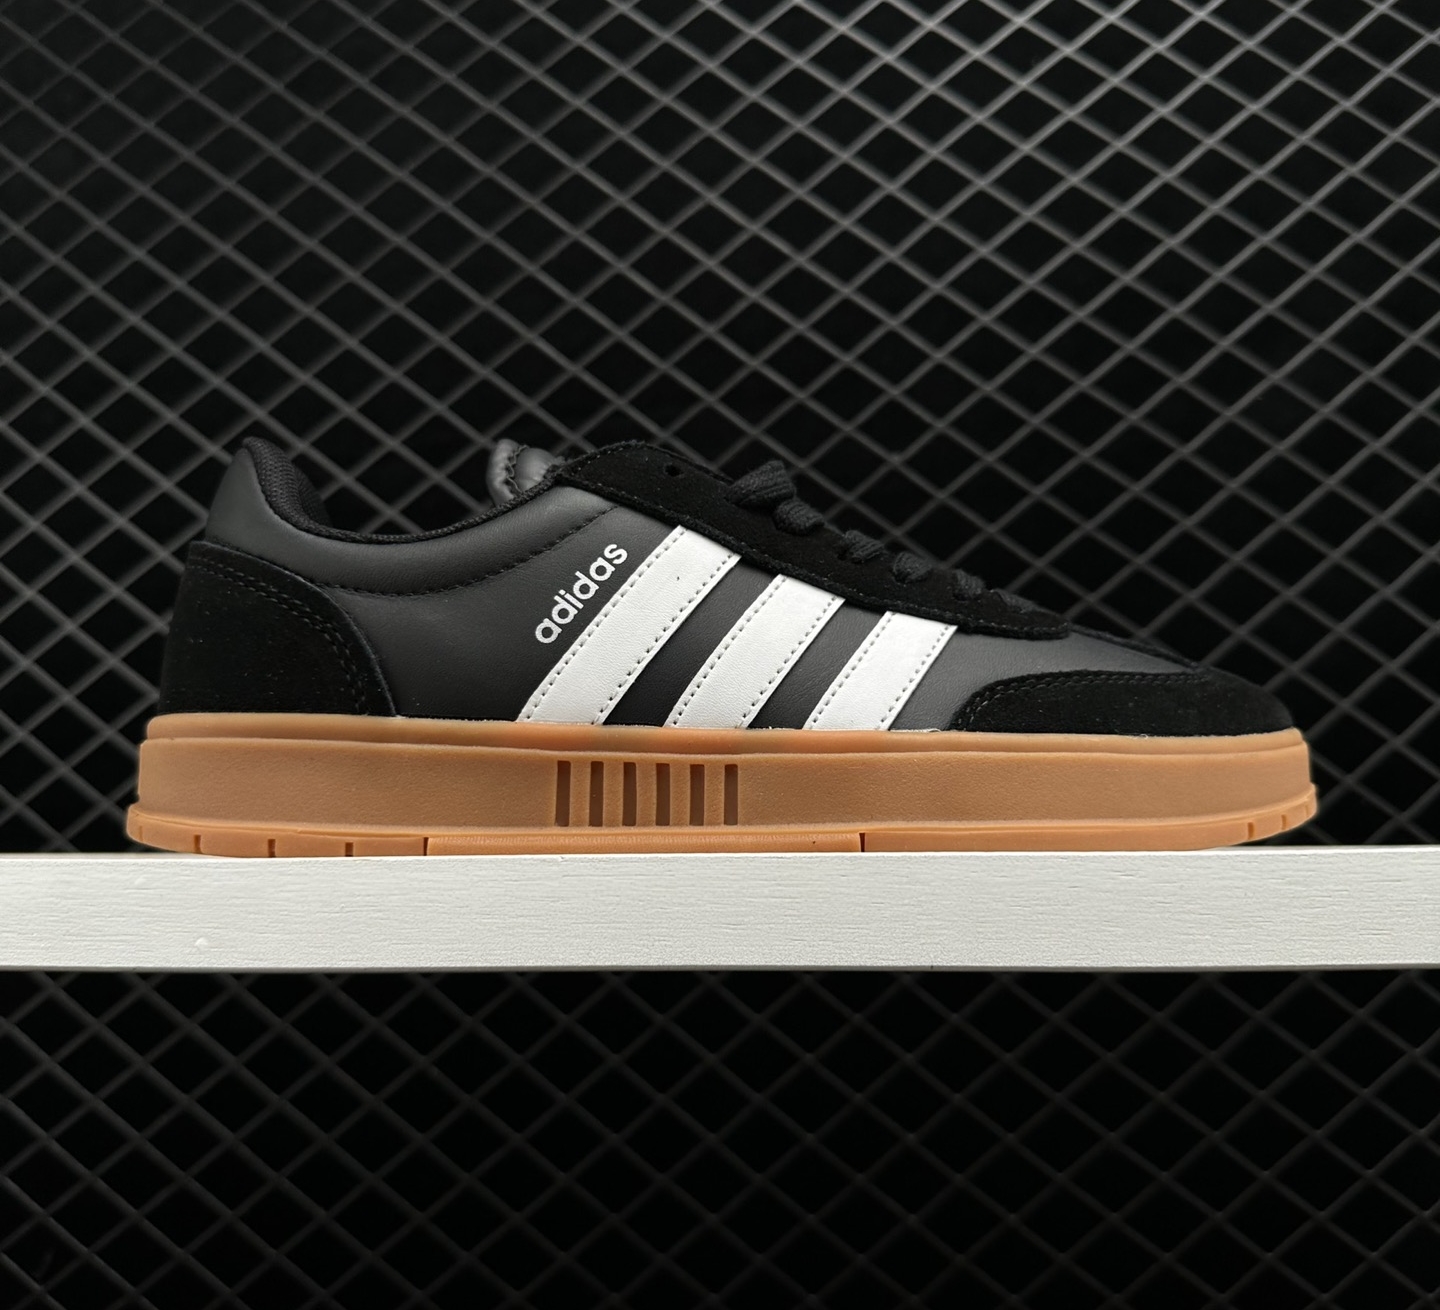 Adidas Neo Gradas FX9305: Black White Brown Urban Sneakers